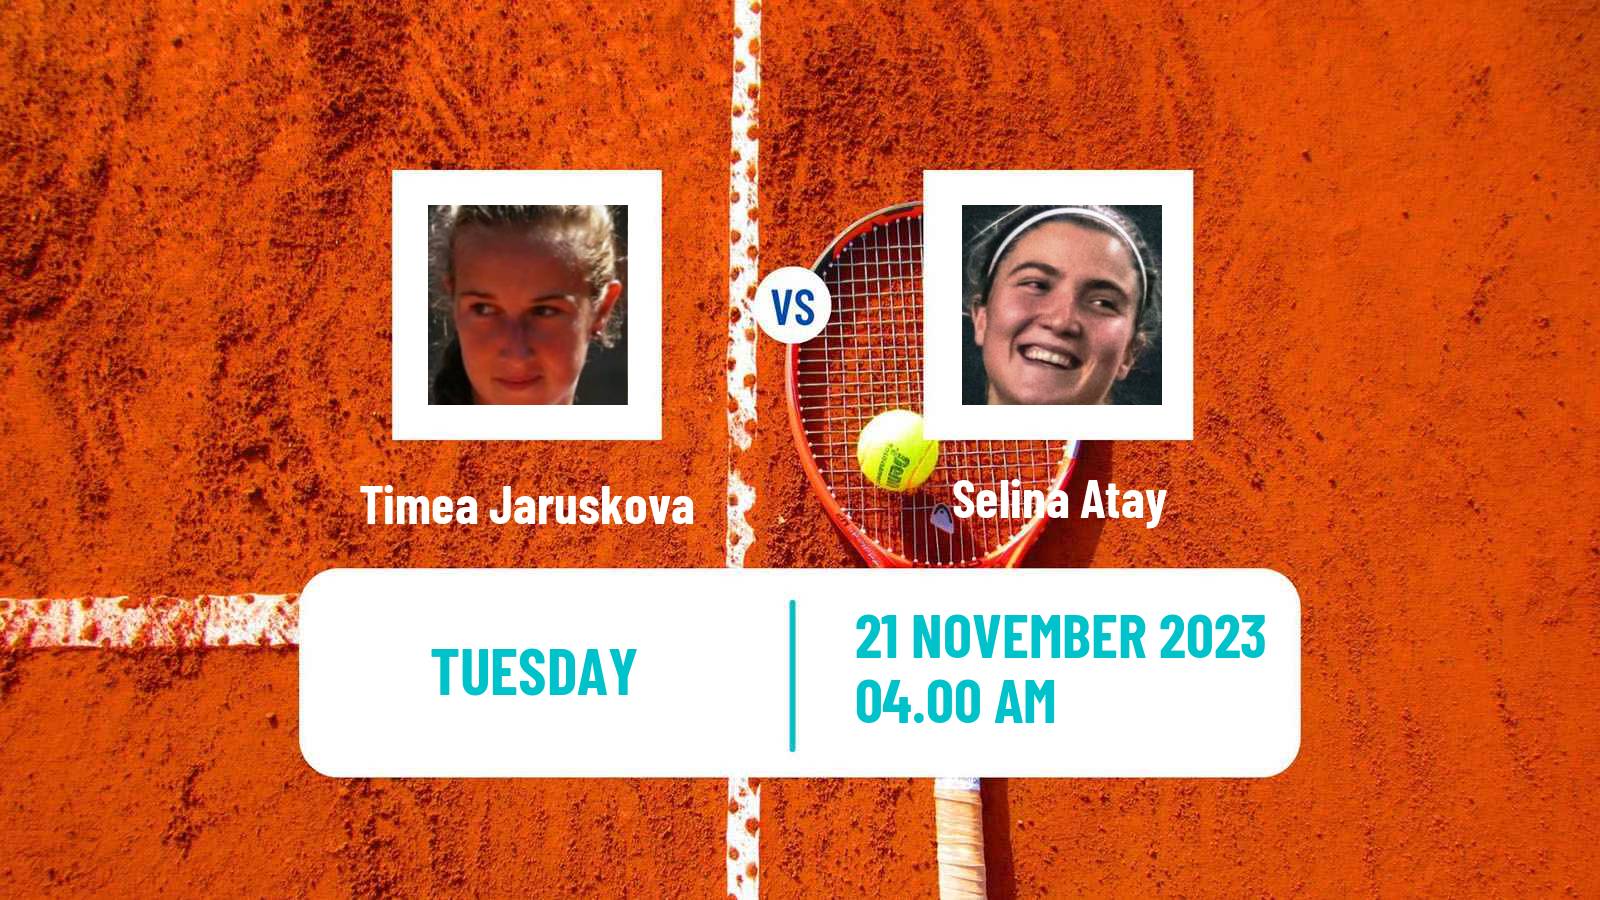 Tennis ITF W15 Antalya 37 Women 2023 Timea Jaruskova - Selina Atay